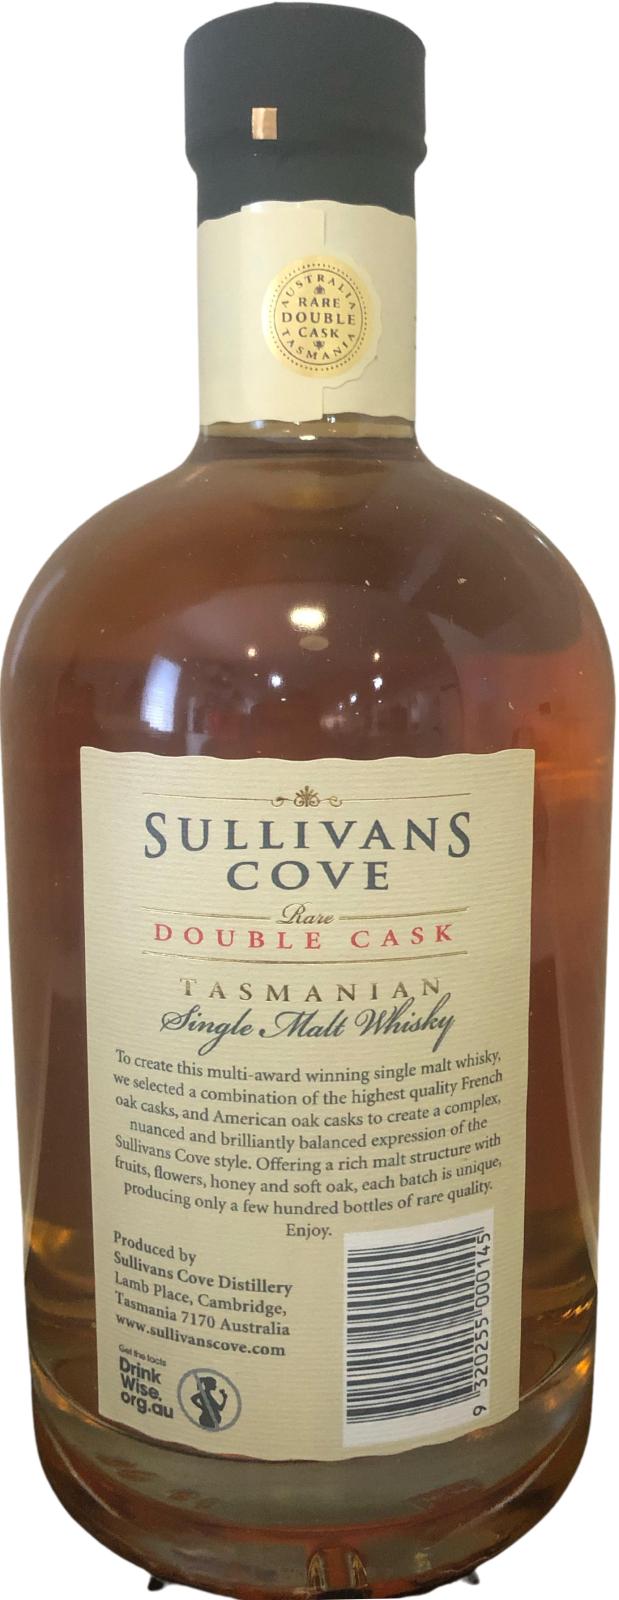 Sullivans Cove 2013